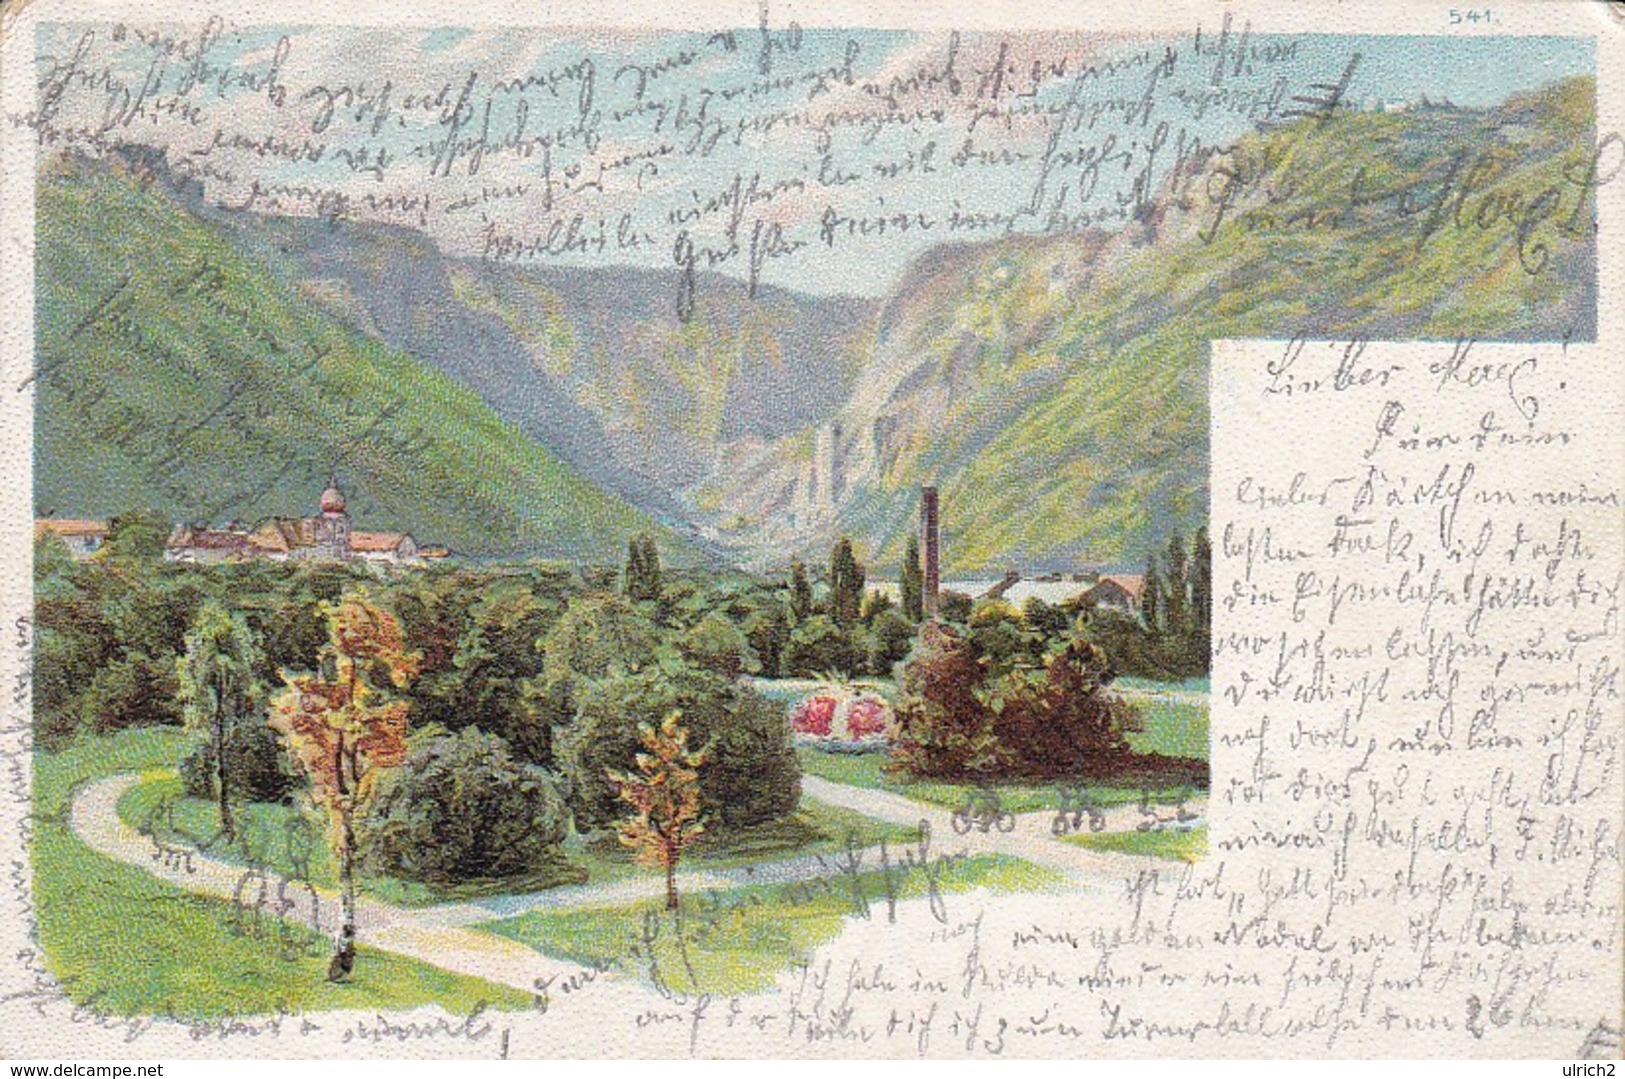 AK Künstlerkarte Sächsische Schweiz (?) - Mulda Nach Oschatz - 1902 (35986) - Bastei (sächs. Schweiz)